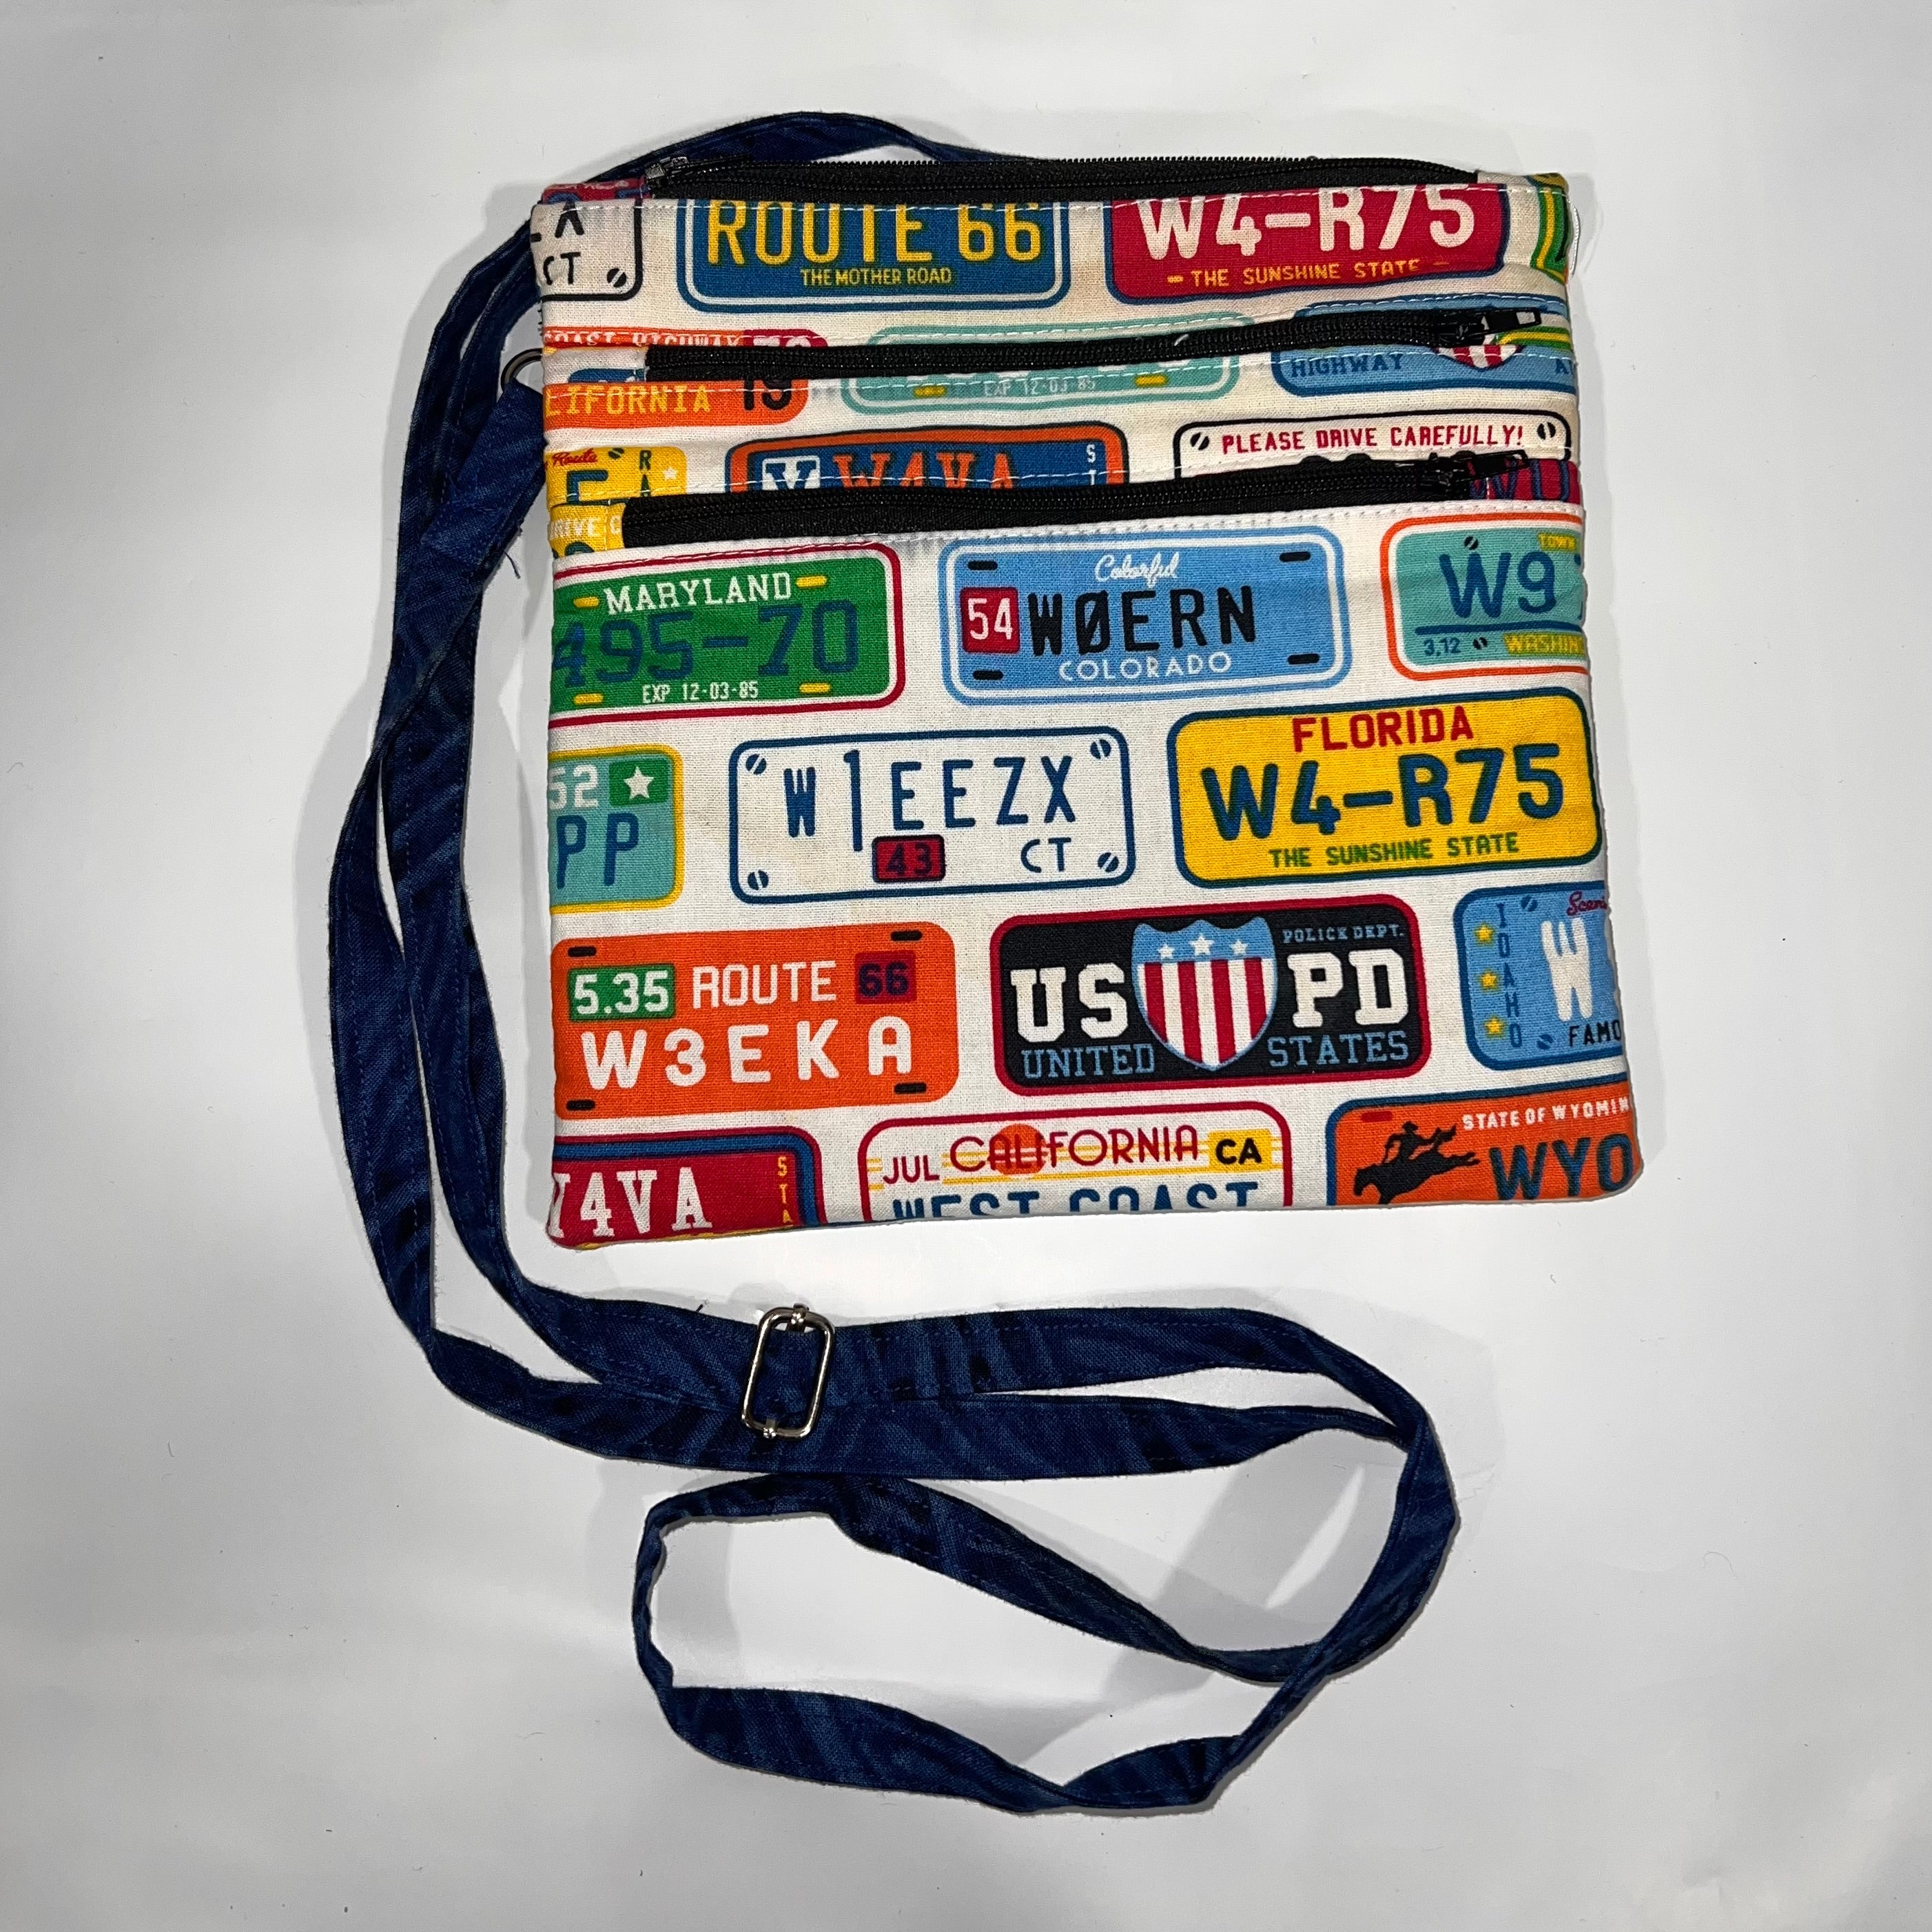 Holly Hobo Bag Kit by Sallie Tomato - Quiltfolk